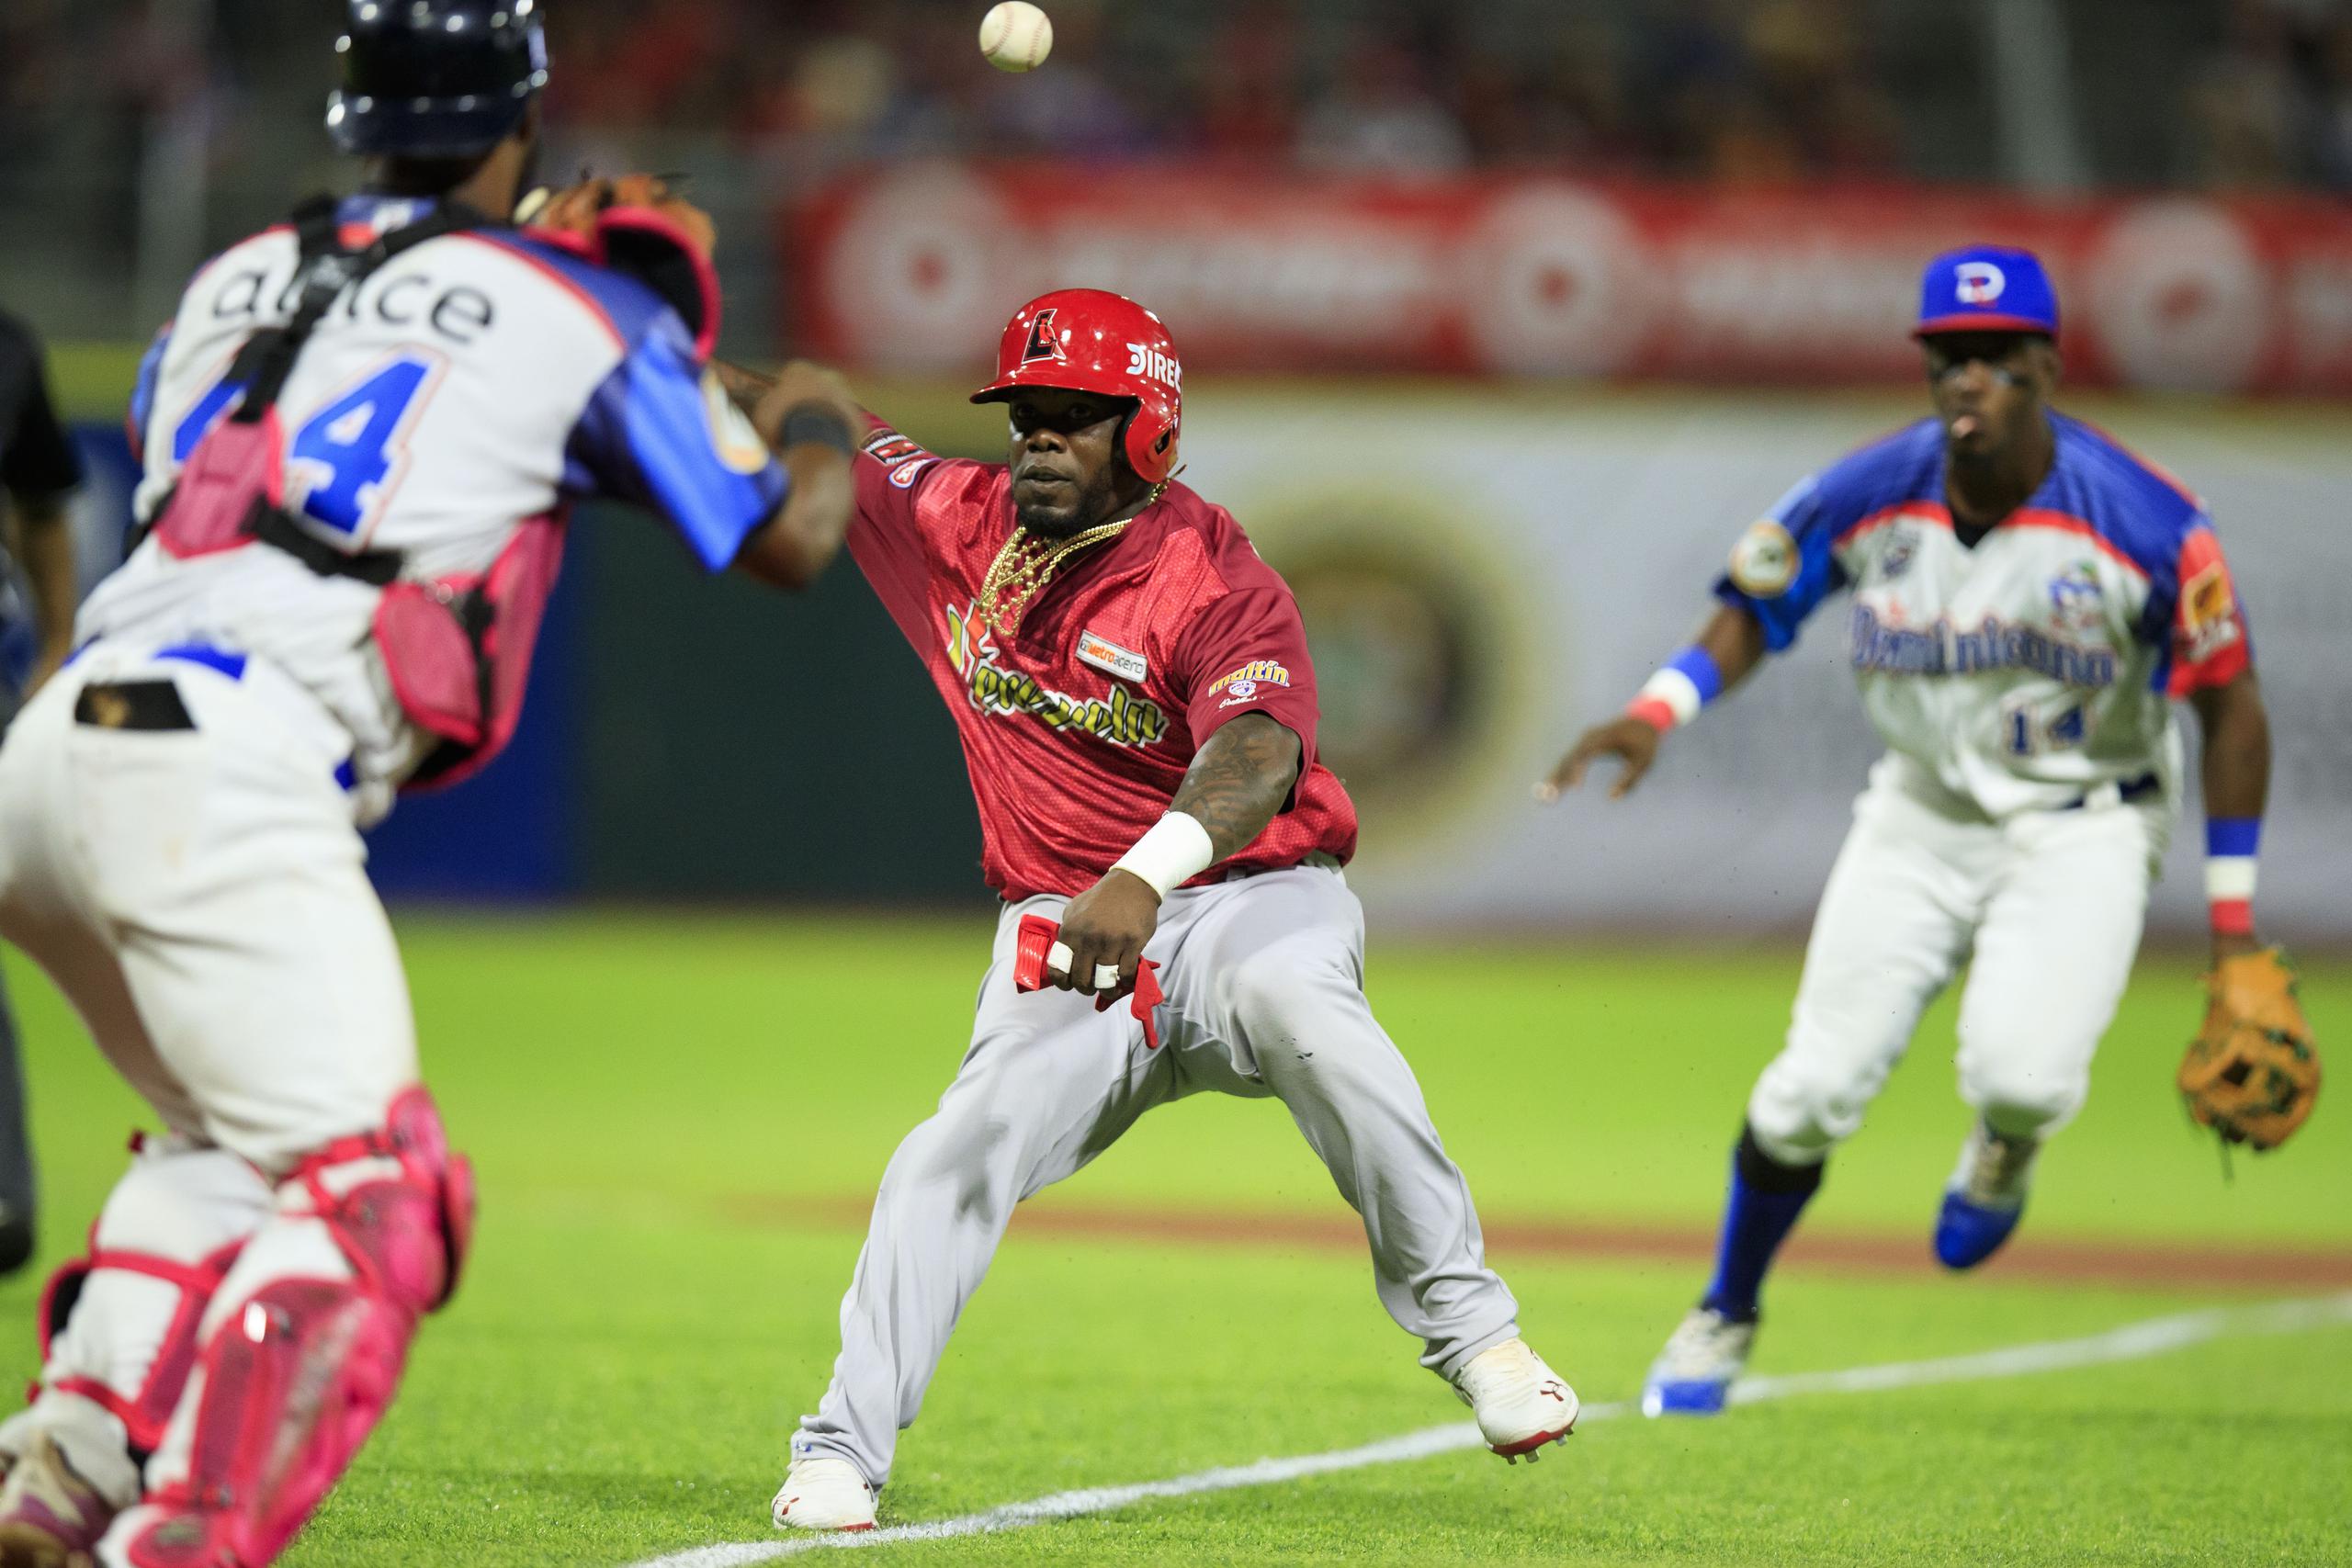 El viernes República Dominicana  y Venezuela disputaban el campeonato de la Serie del Caribe. En la foto, Adonis García de Venezuela  es atrapado entre primera y segunda base.